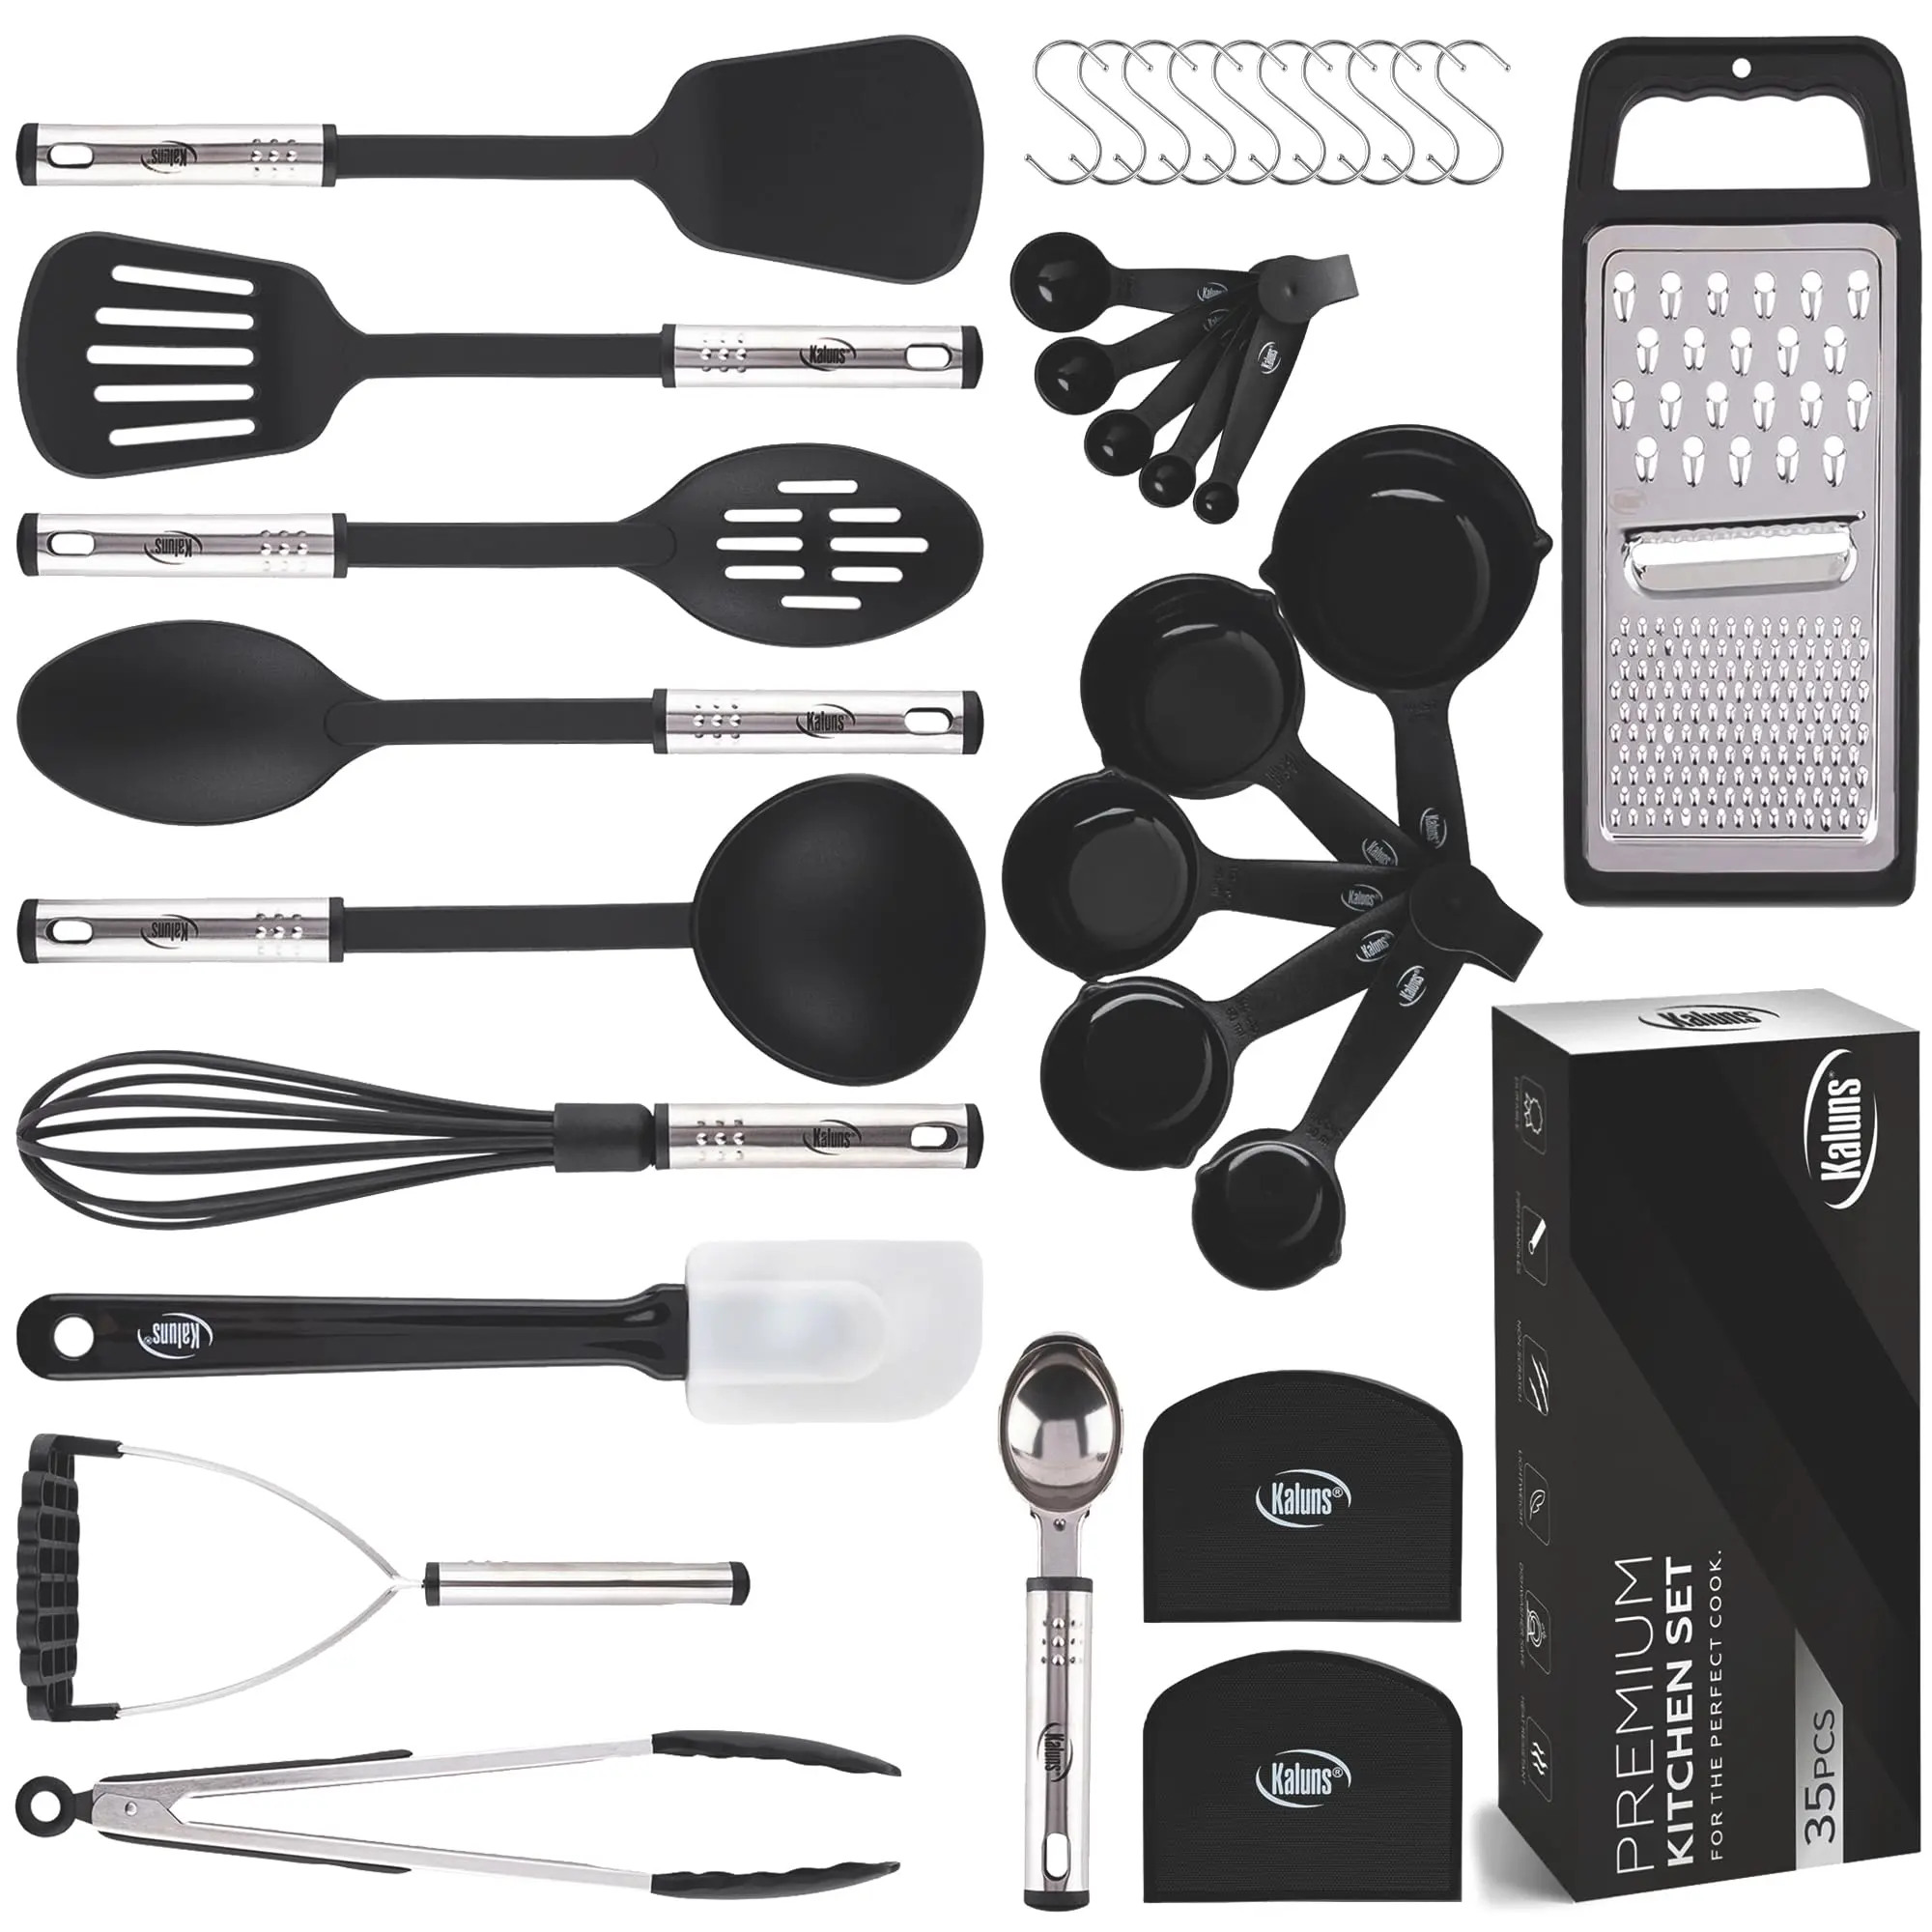 utensilio de cocina - Qué utensilios utilizan los chef